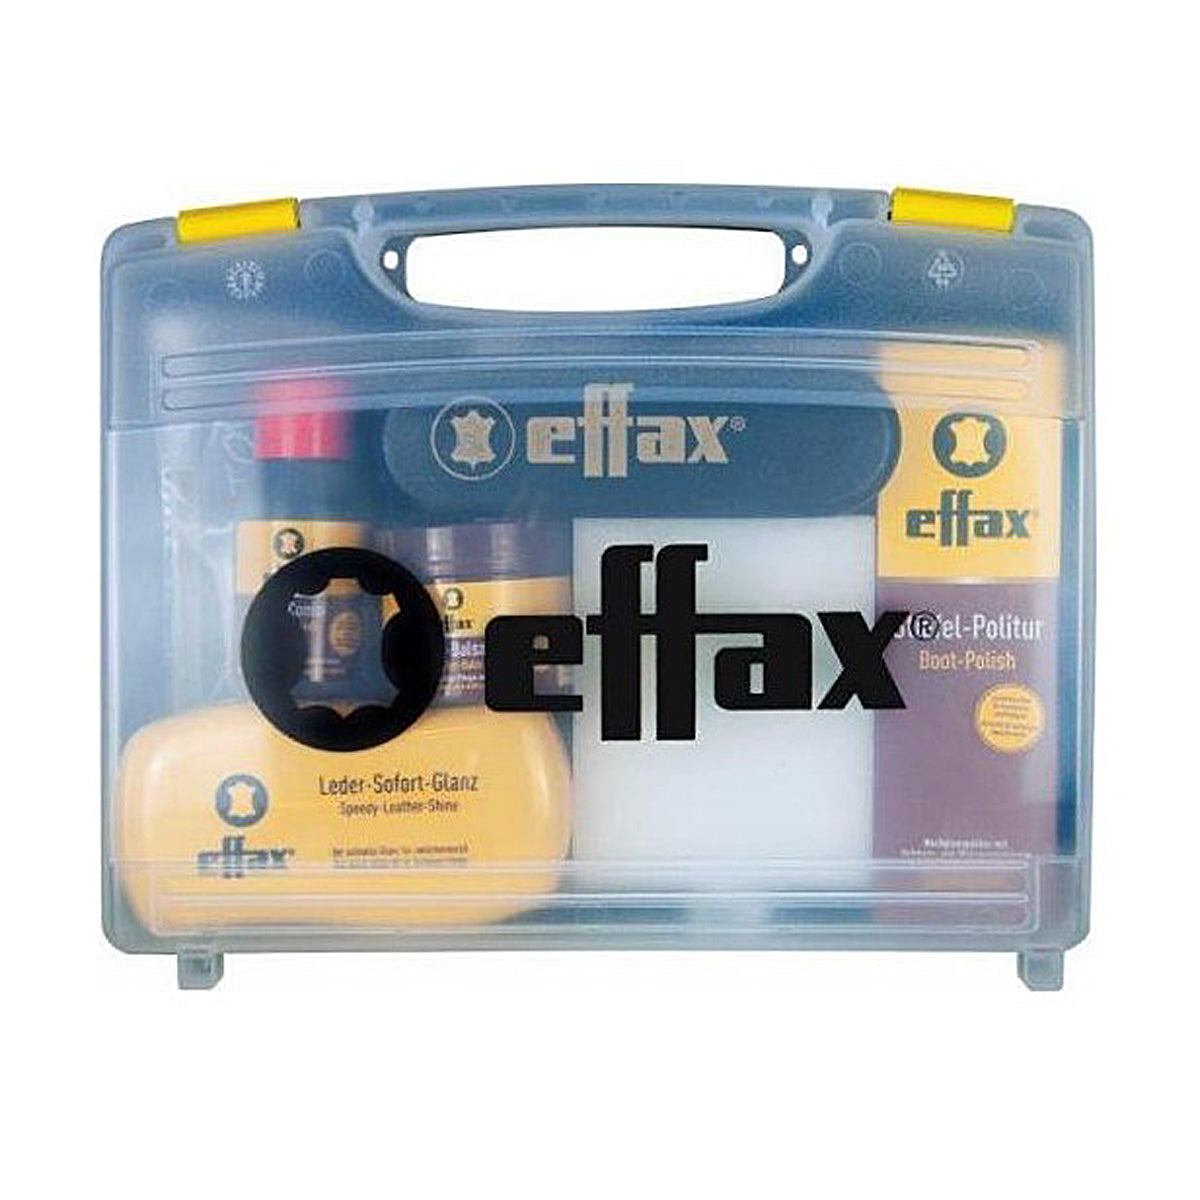 Effax Leather Care Case